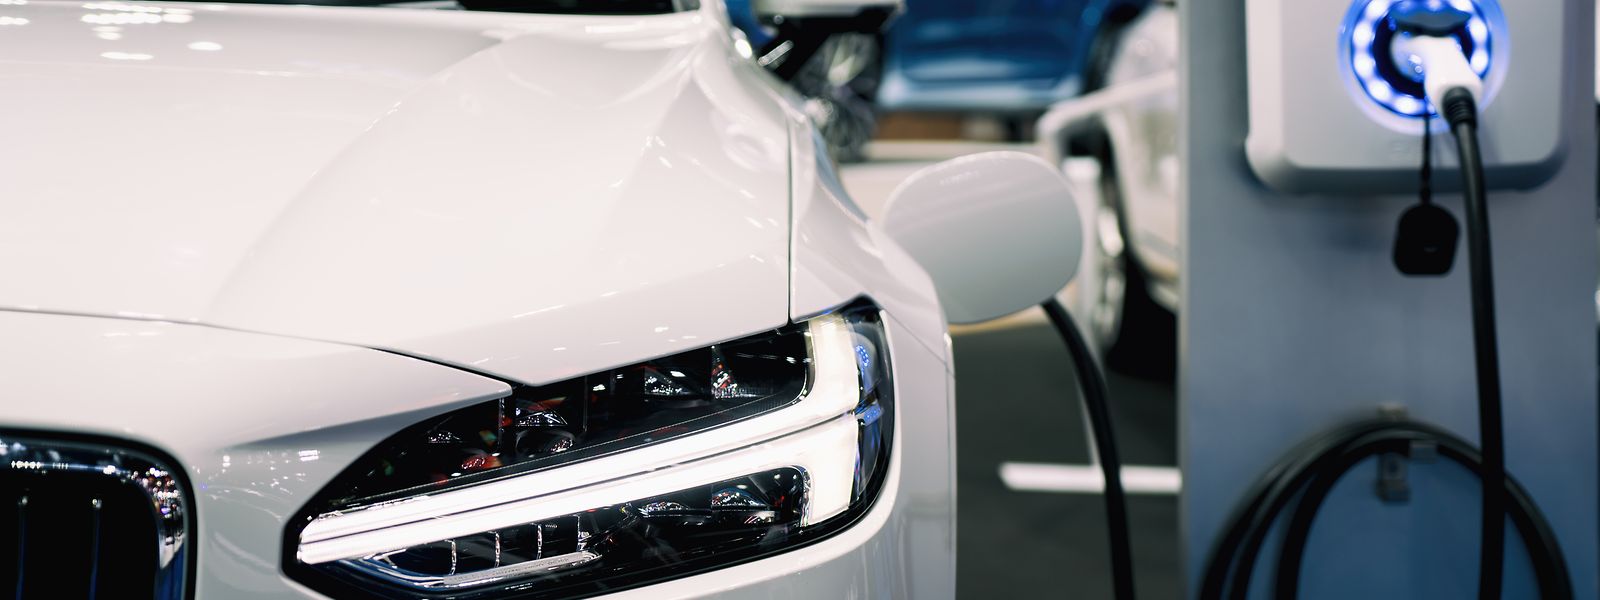 Souvent décriée, c'est pourtant la voiture électrique qui représente l'avenir de l'automobile.